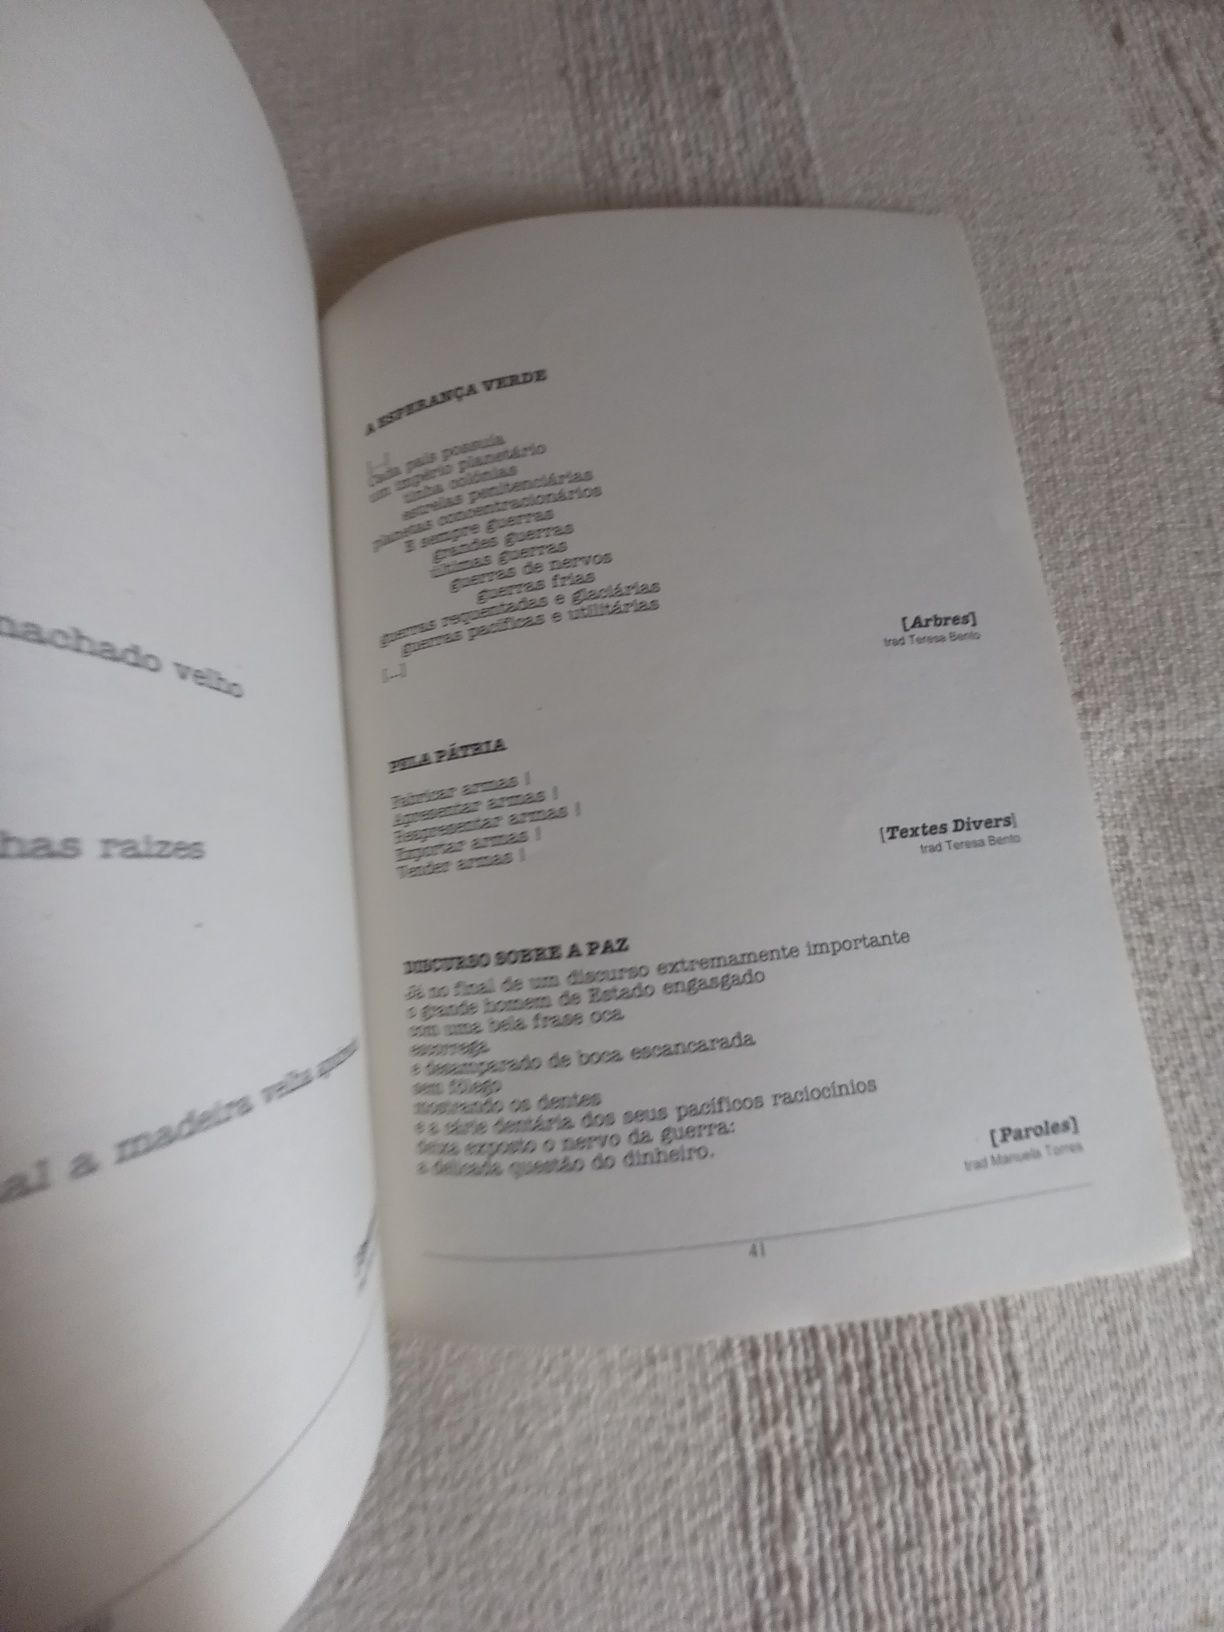 Antologia de poesia de Jacques Prévert Ass Abril em Maio